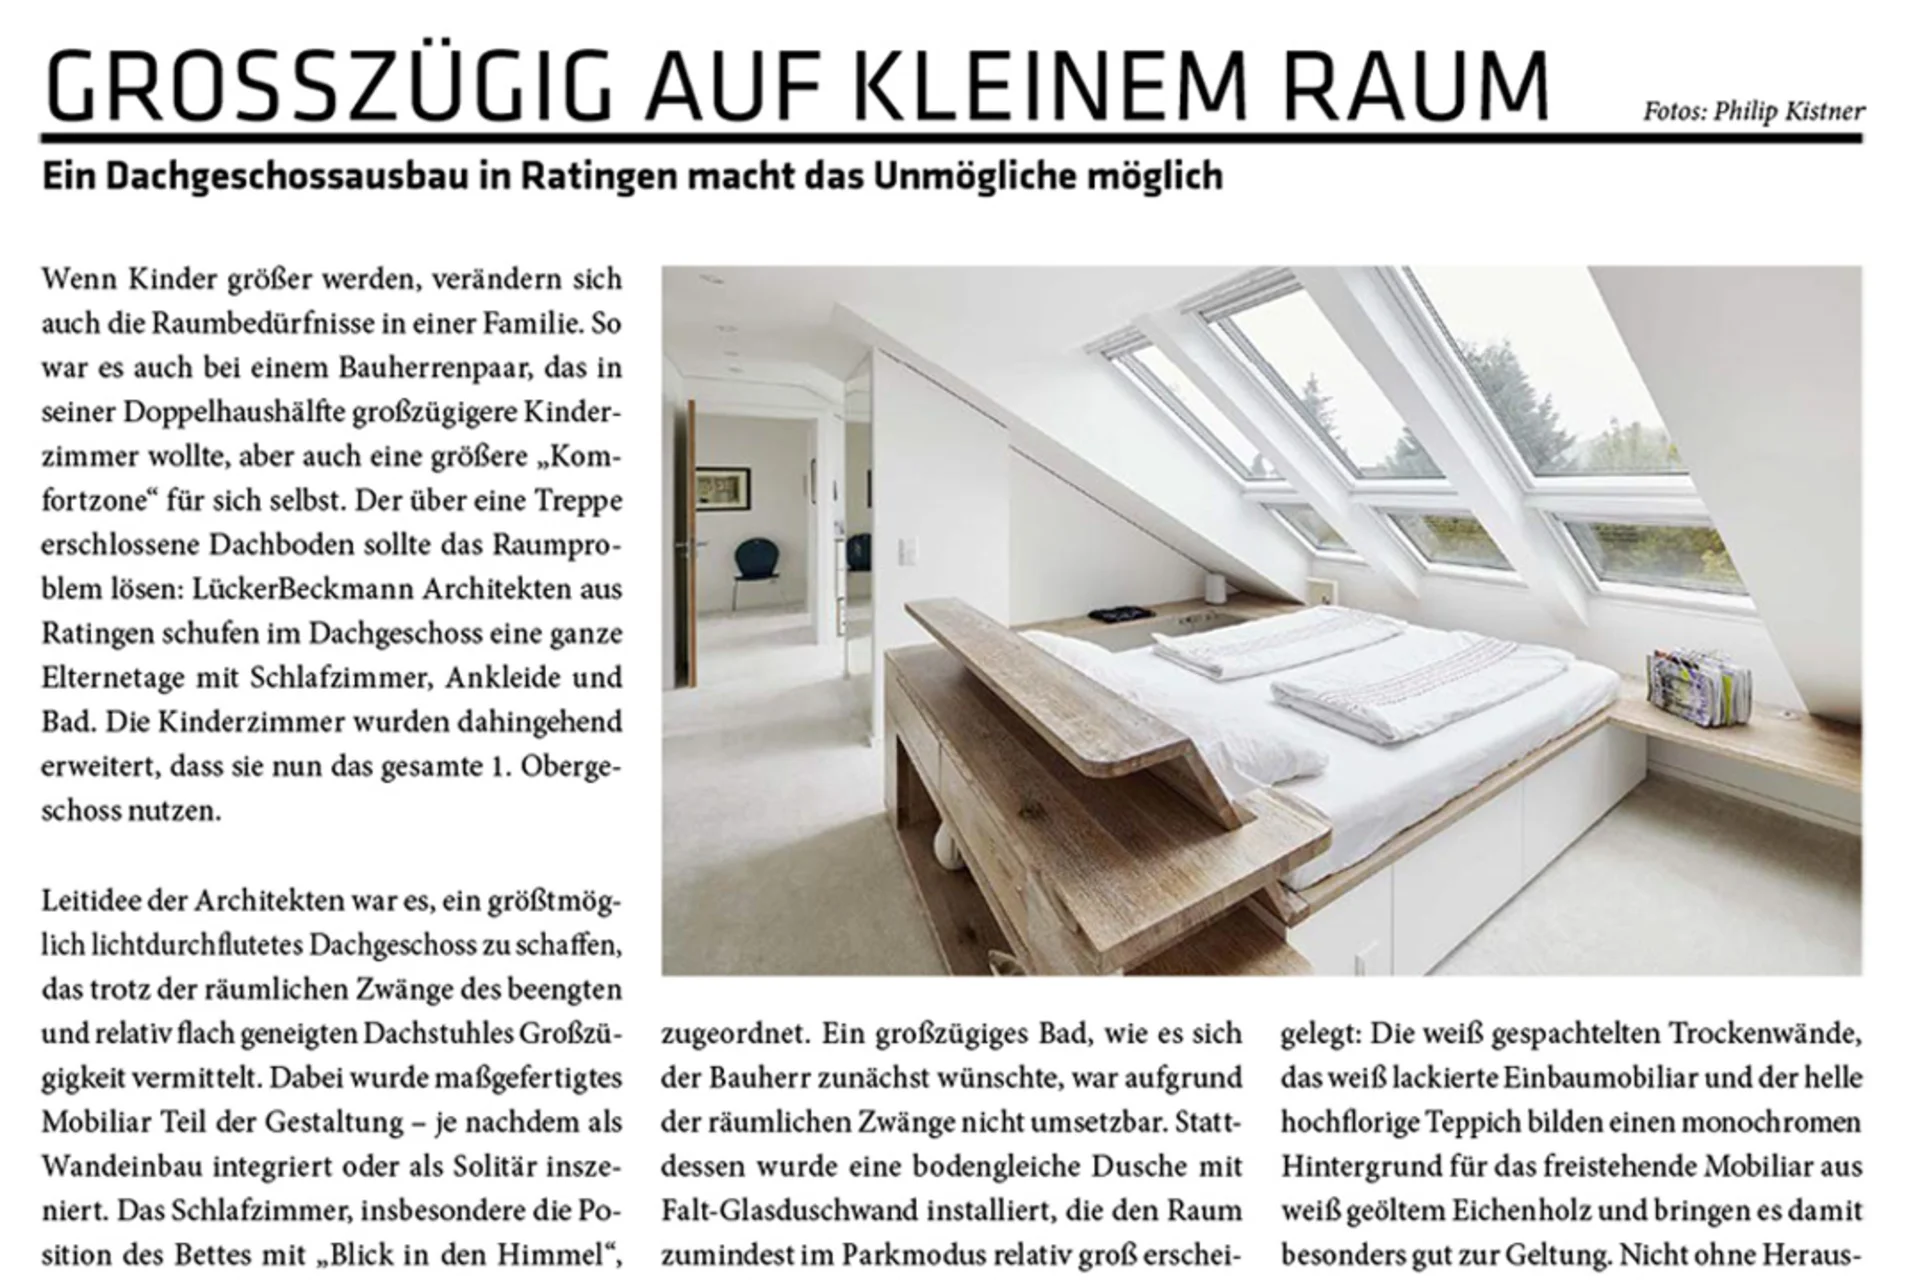 Zeitungstext: Ein Dachgeschossausbau in Ratingen